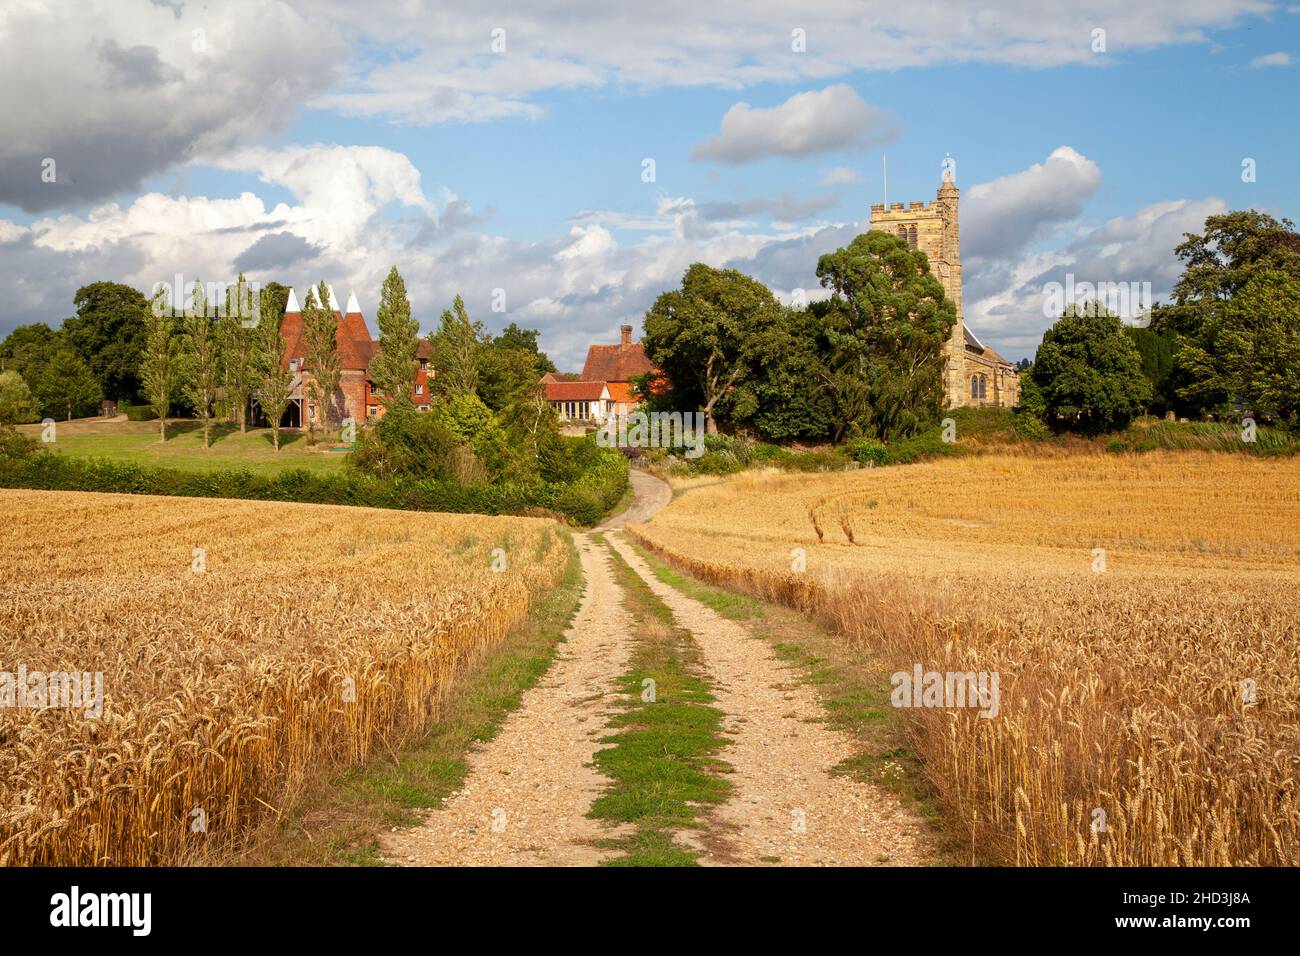 Ferme à travers les champs de blé jusqu'aux maisons Oast et à l'église St Margare, Horsmonden, Kent, Royaume-Uni Banque D'Images